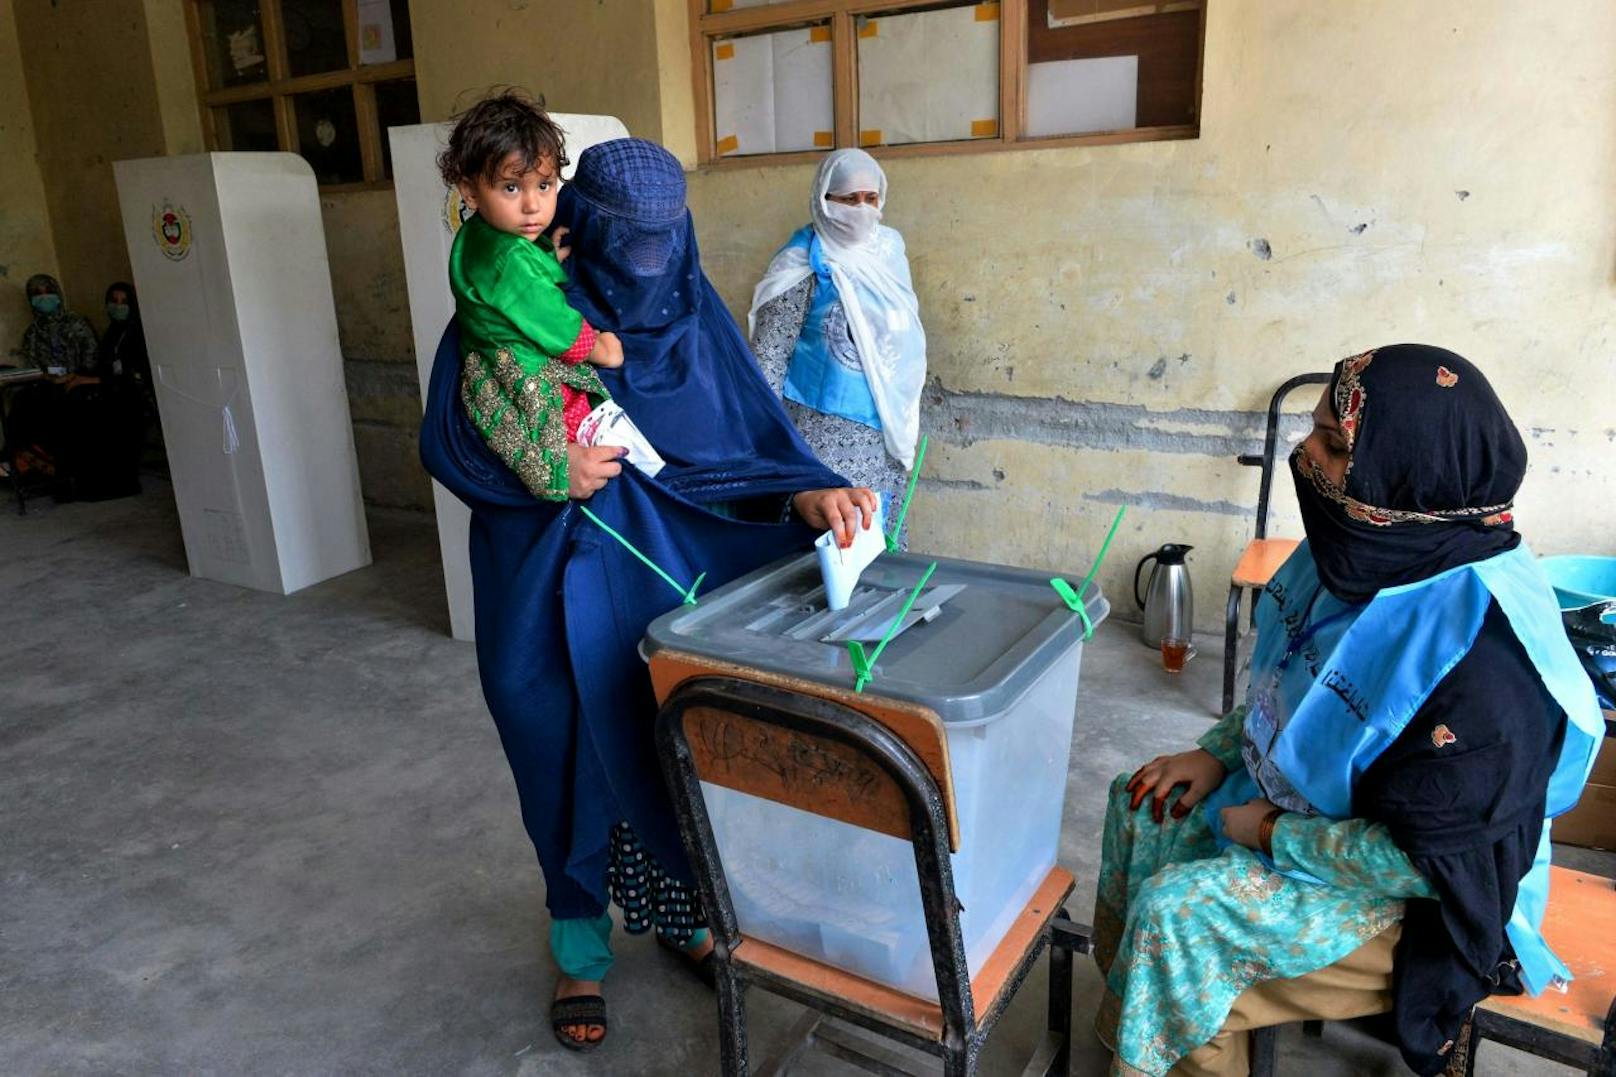 Bilder in sozialen Medien zeigten Menschen aus mehreren Provinzen, die ihre Stimme abgaben oder vor Wahllokalen warteten.